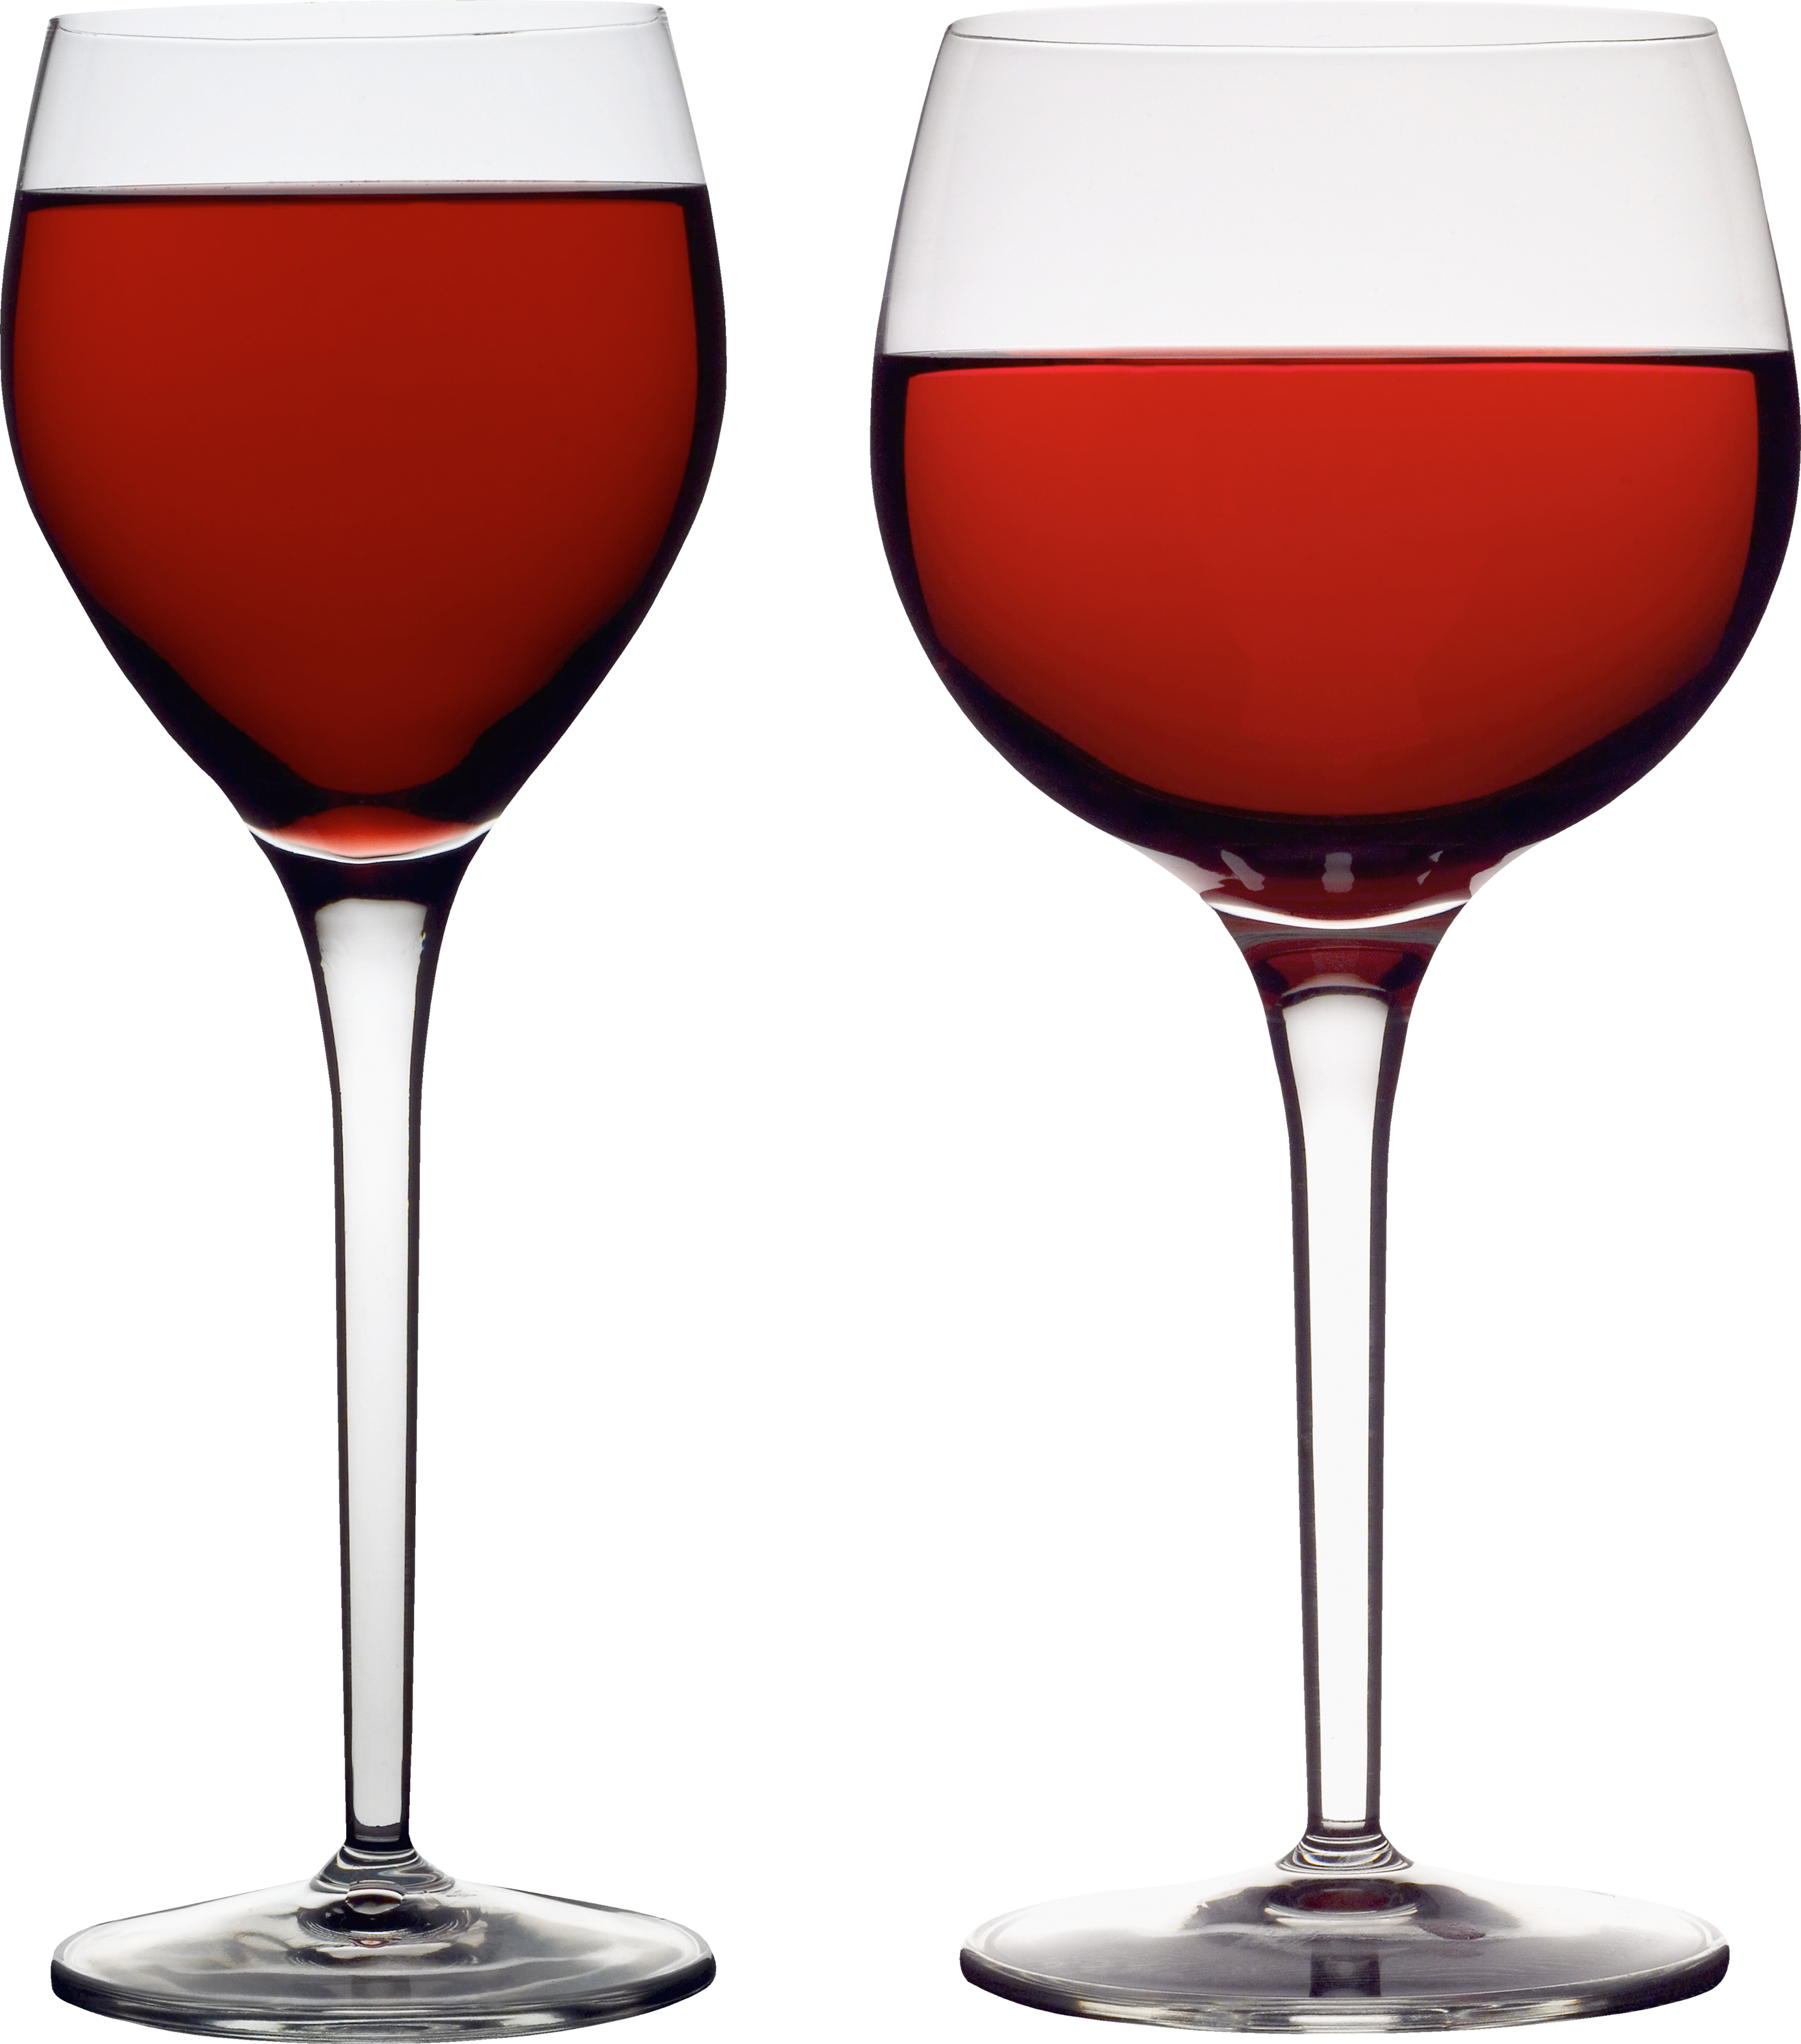 Bicchiere di vino